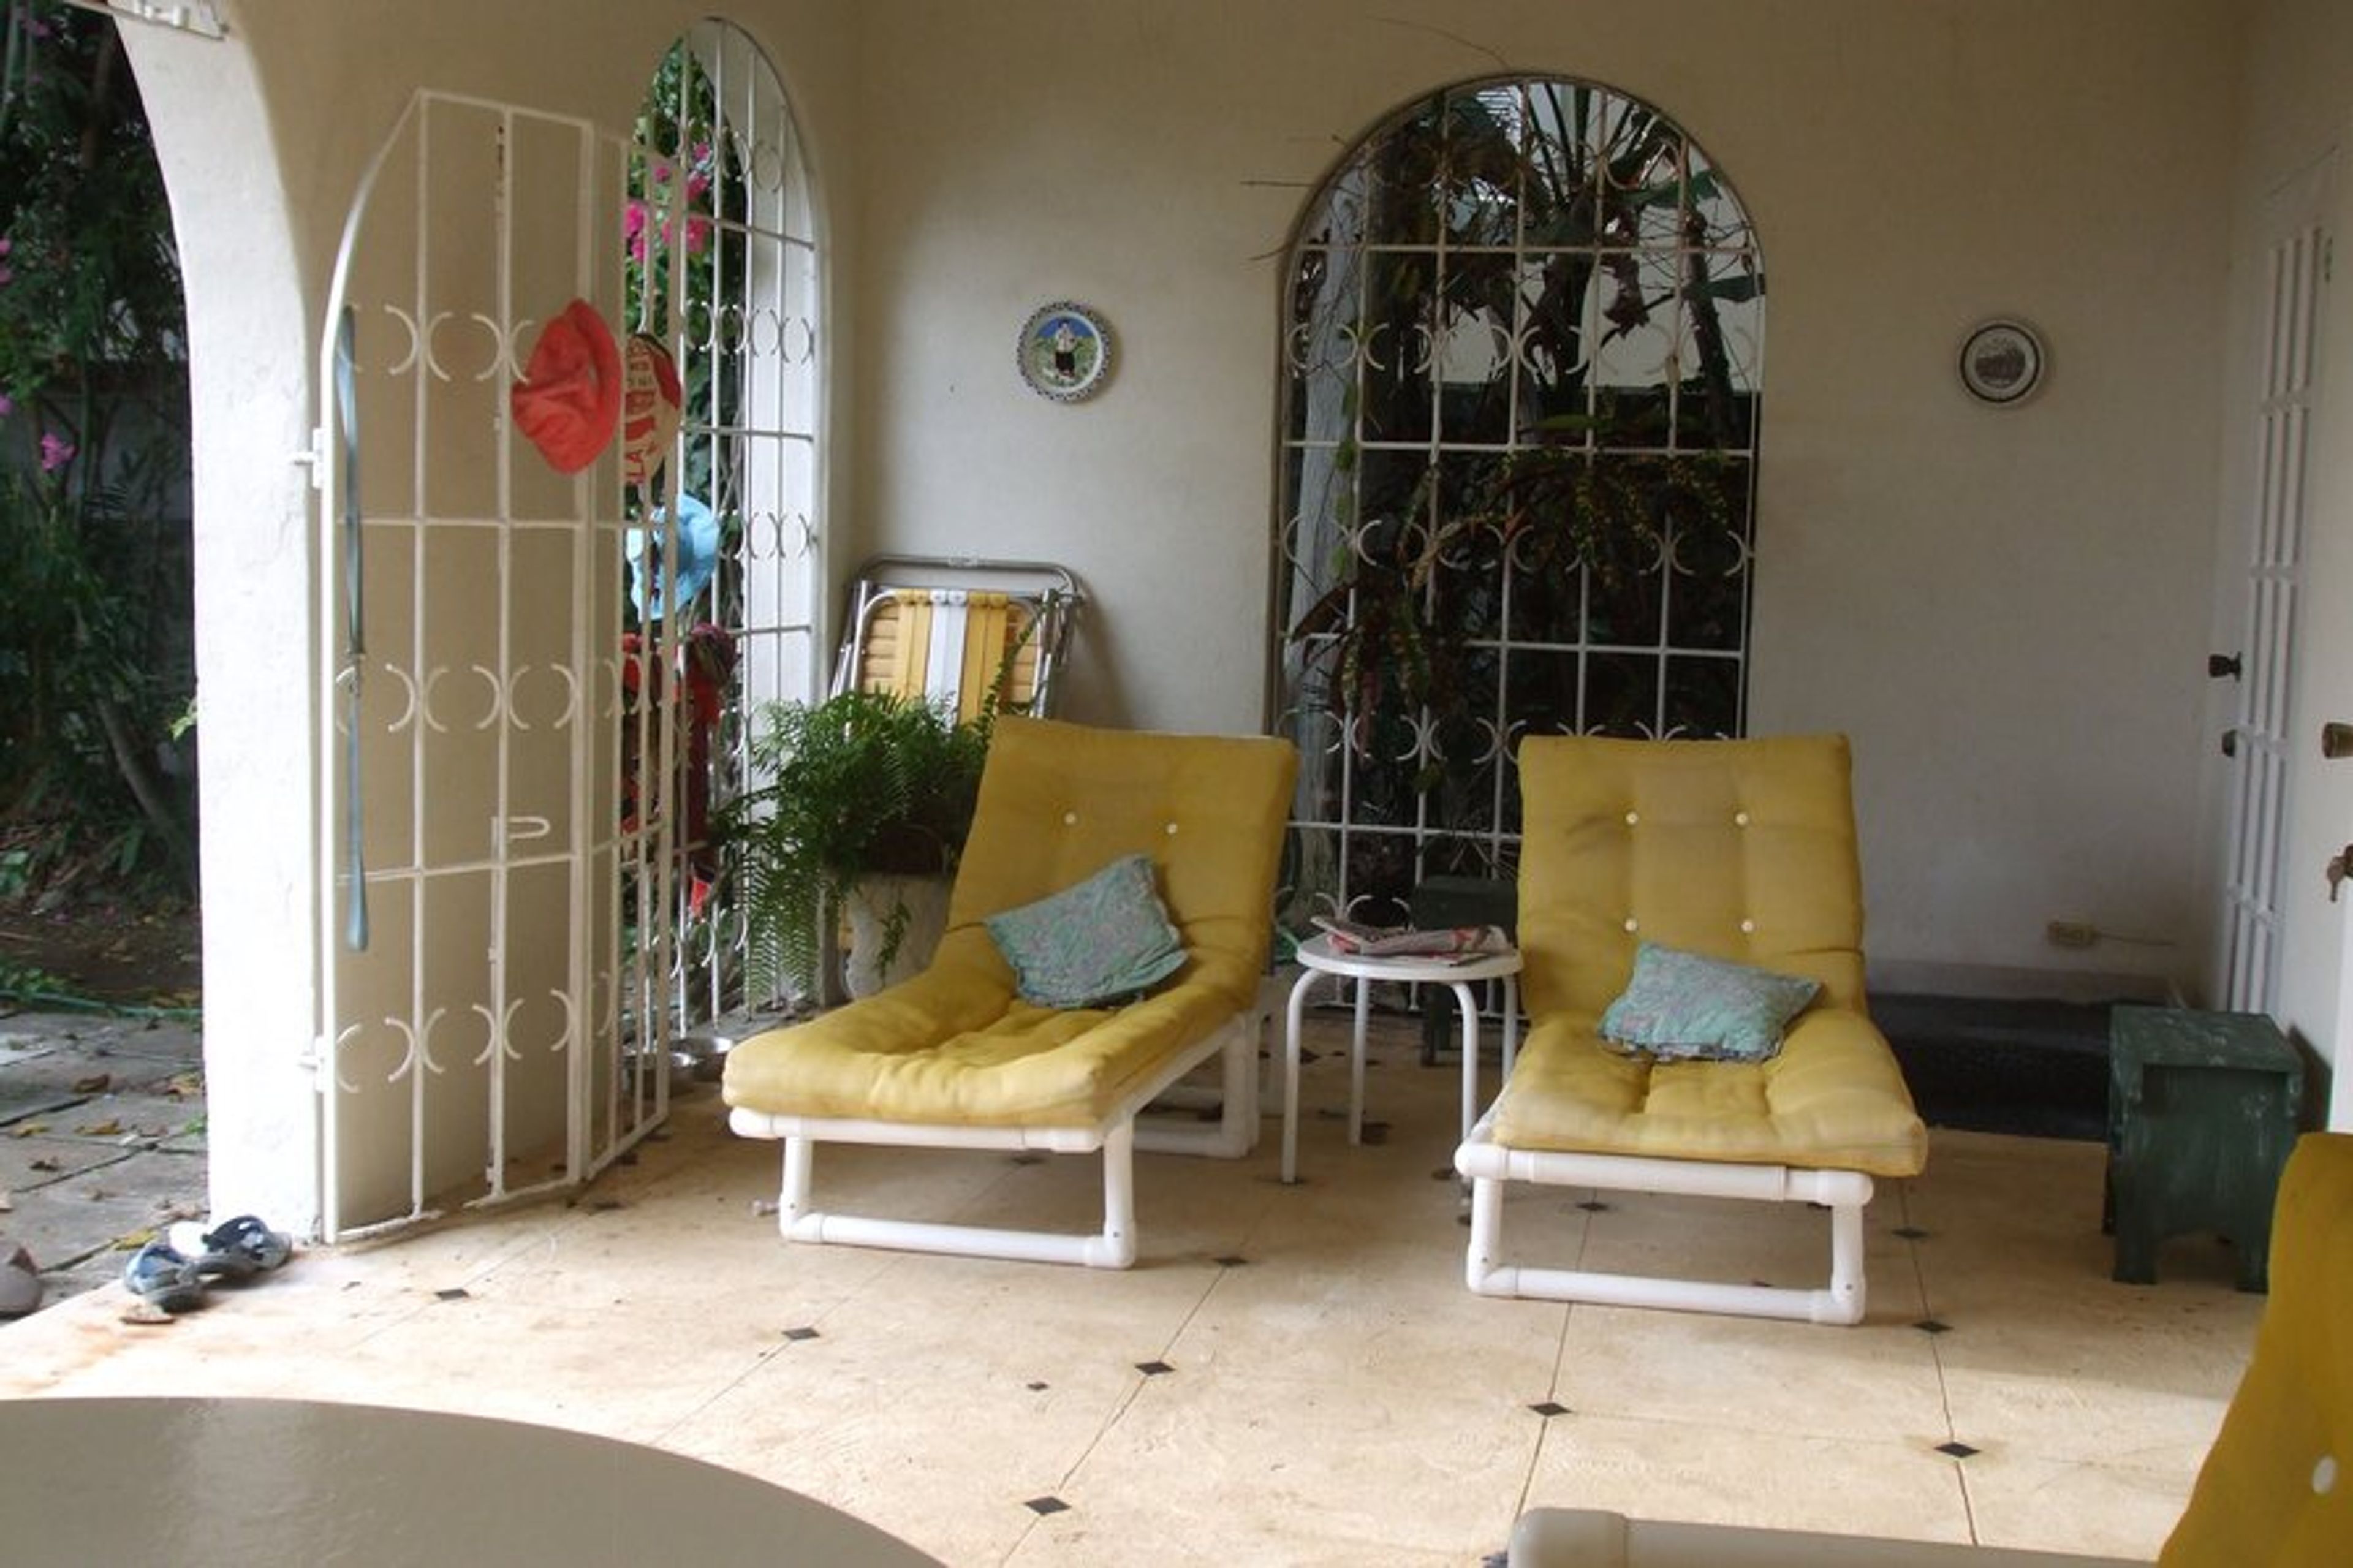 Veranda/porch between living room and garden